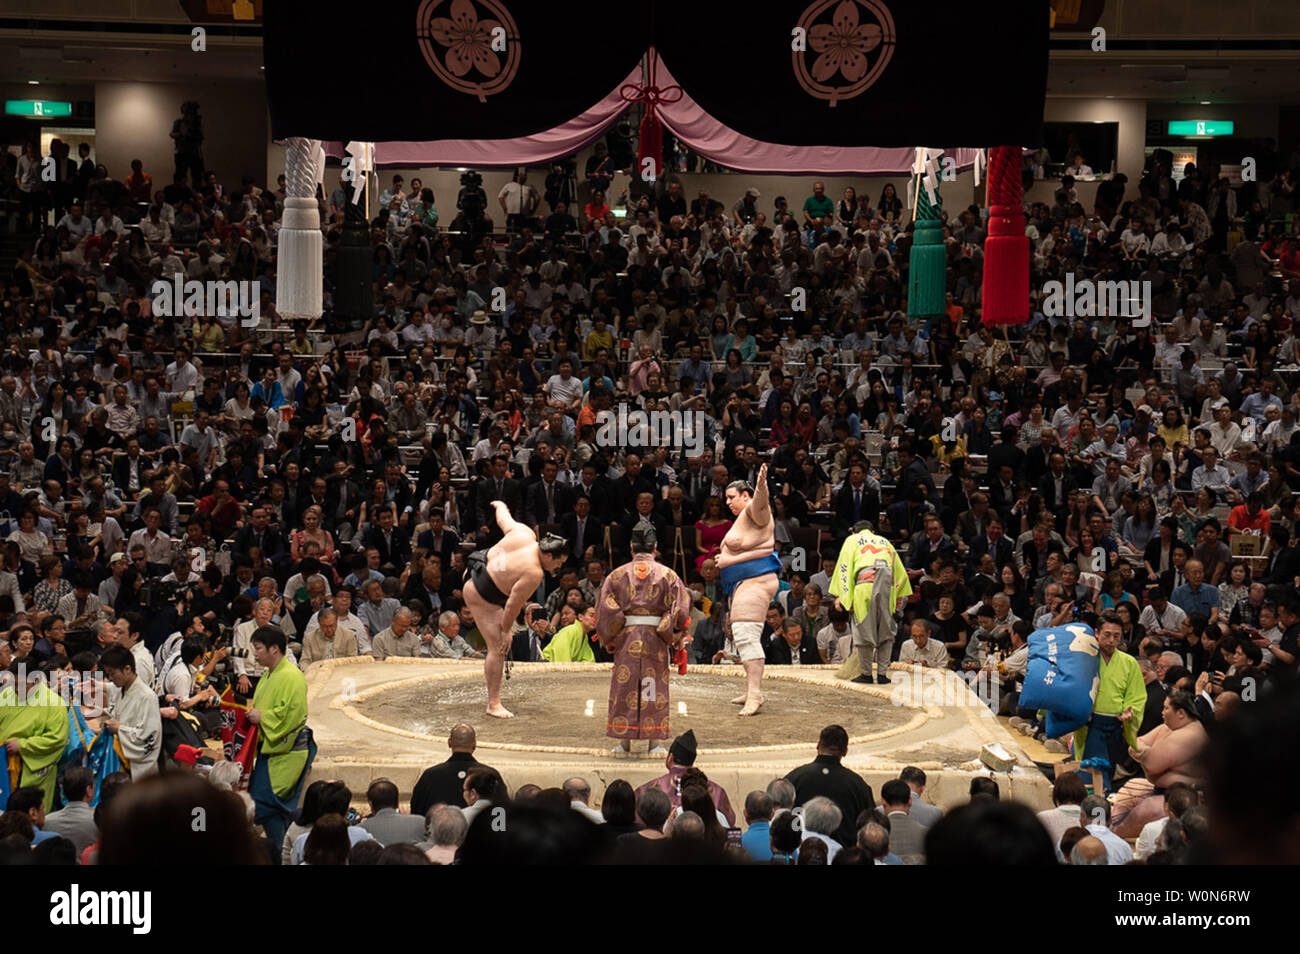 Präsident Donald J. Trumpf, verbunden durch japanische Ministerpräsident Shinzo Abe, besucht die Sumo Grand Championship und beteiligt sich am 27. Mai 2019, in der Darstellung der Trophäen in der kulturellen Veranstaltung in der Ryogoku Kokugikan Stadion in Tokio. Weiße Haus Foto von Shealah Craighead/UPI Stockfoto